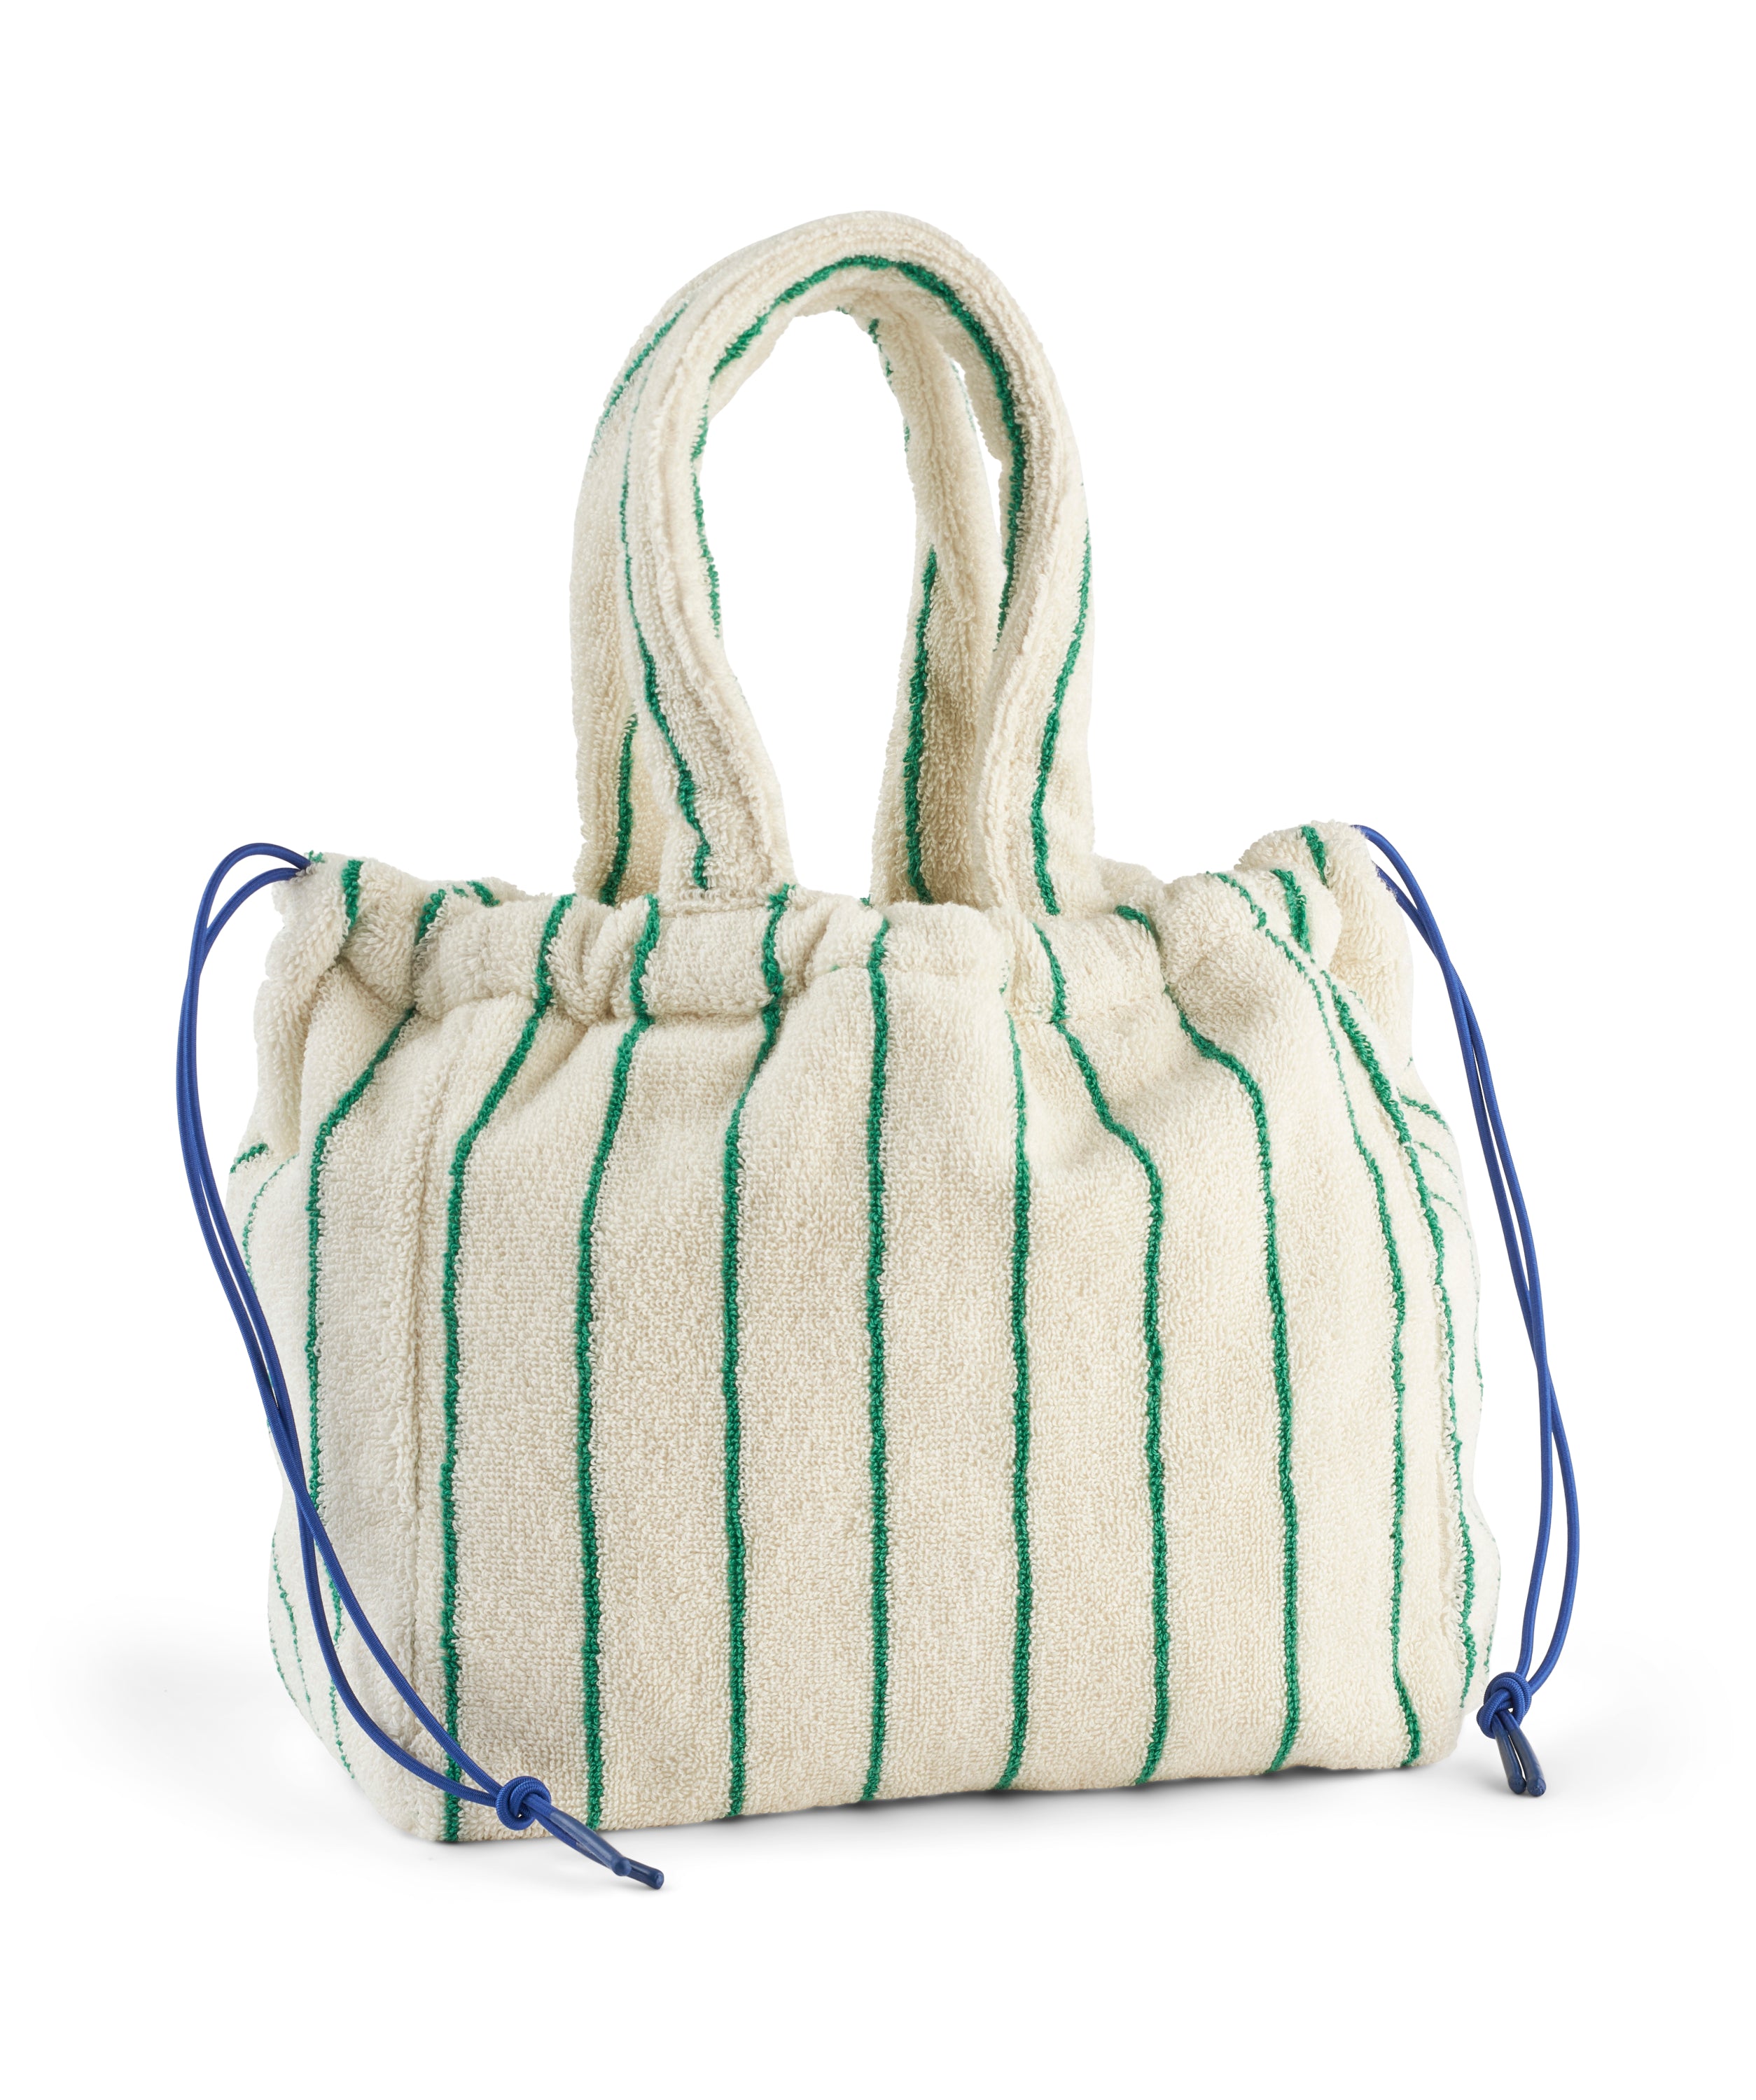 Naram handbag small, pure white & grass